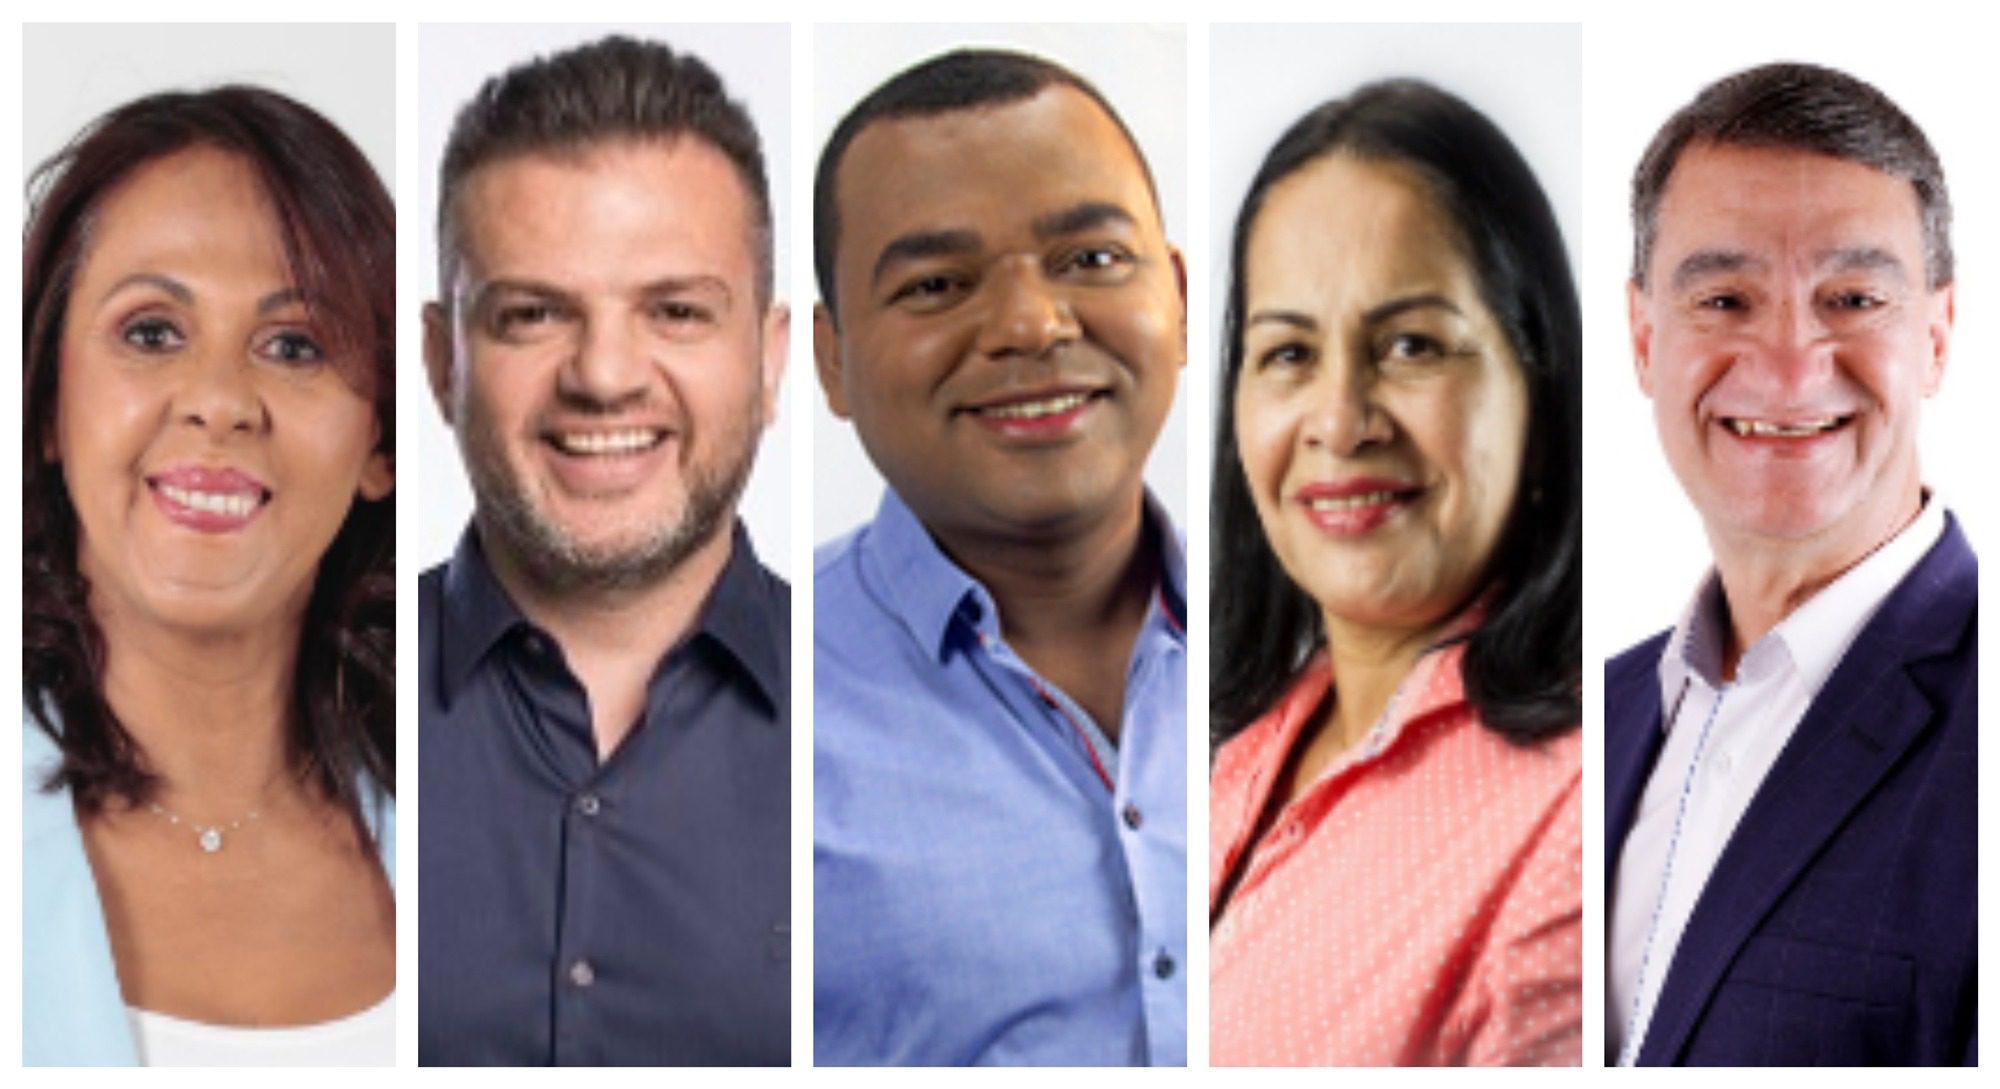 Candidatos a prefeito - Eleições Itaquaquecetuba 2020